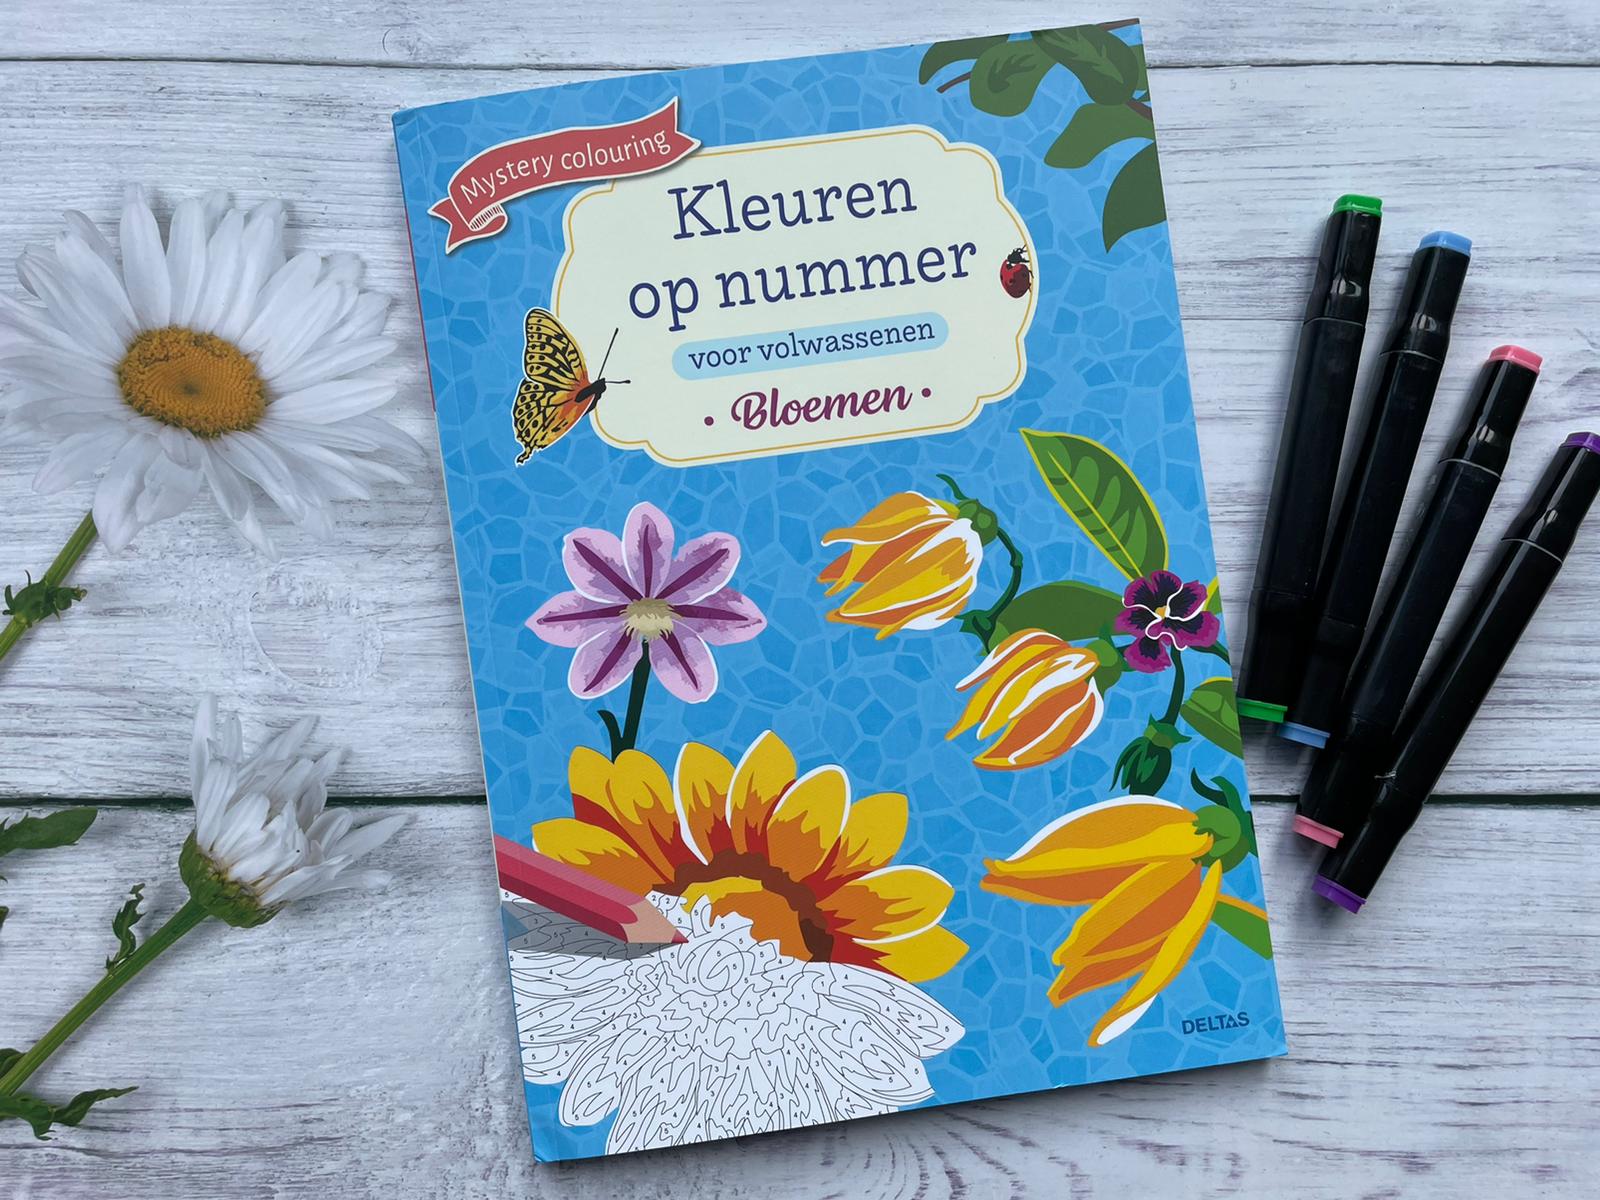 Kleuren voor volwassenen bloemen – een ontspan momentje! -